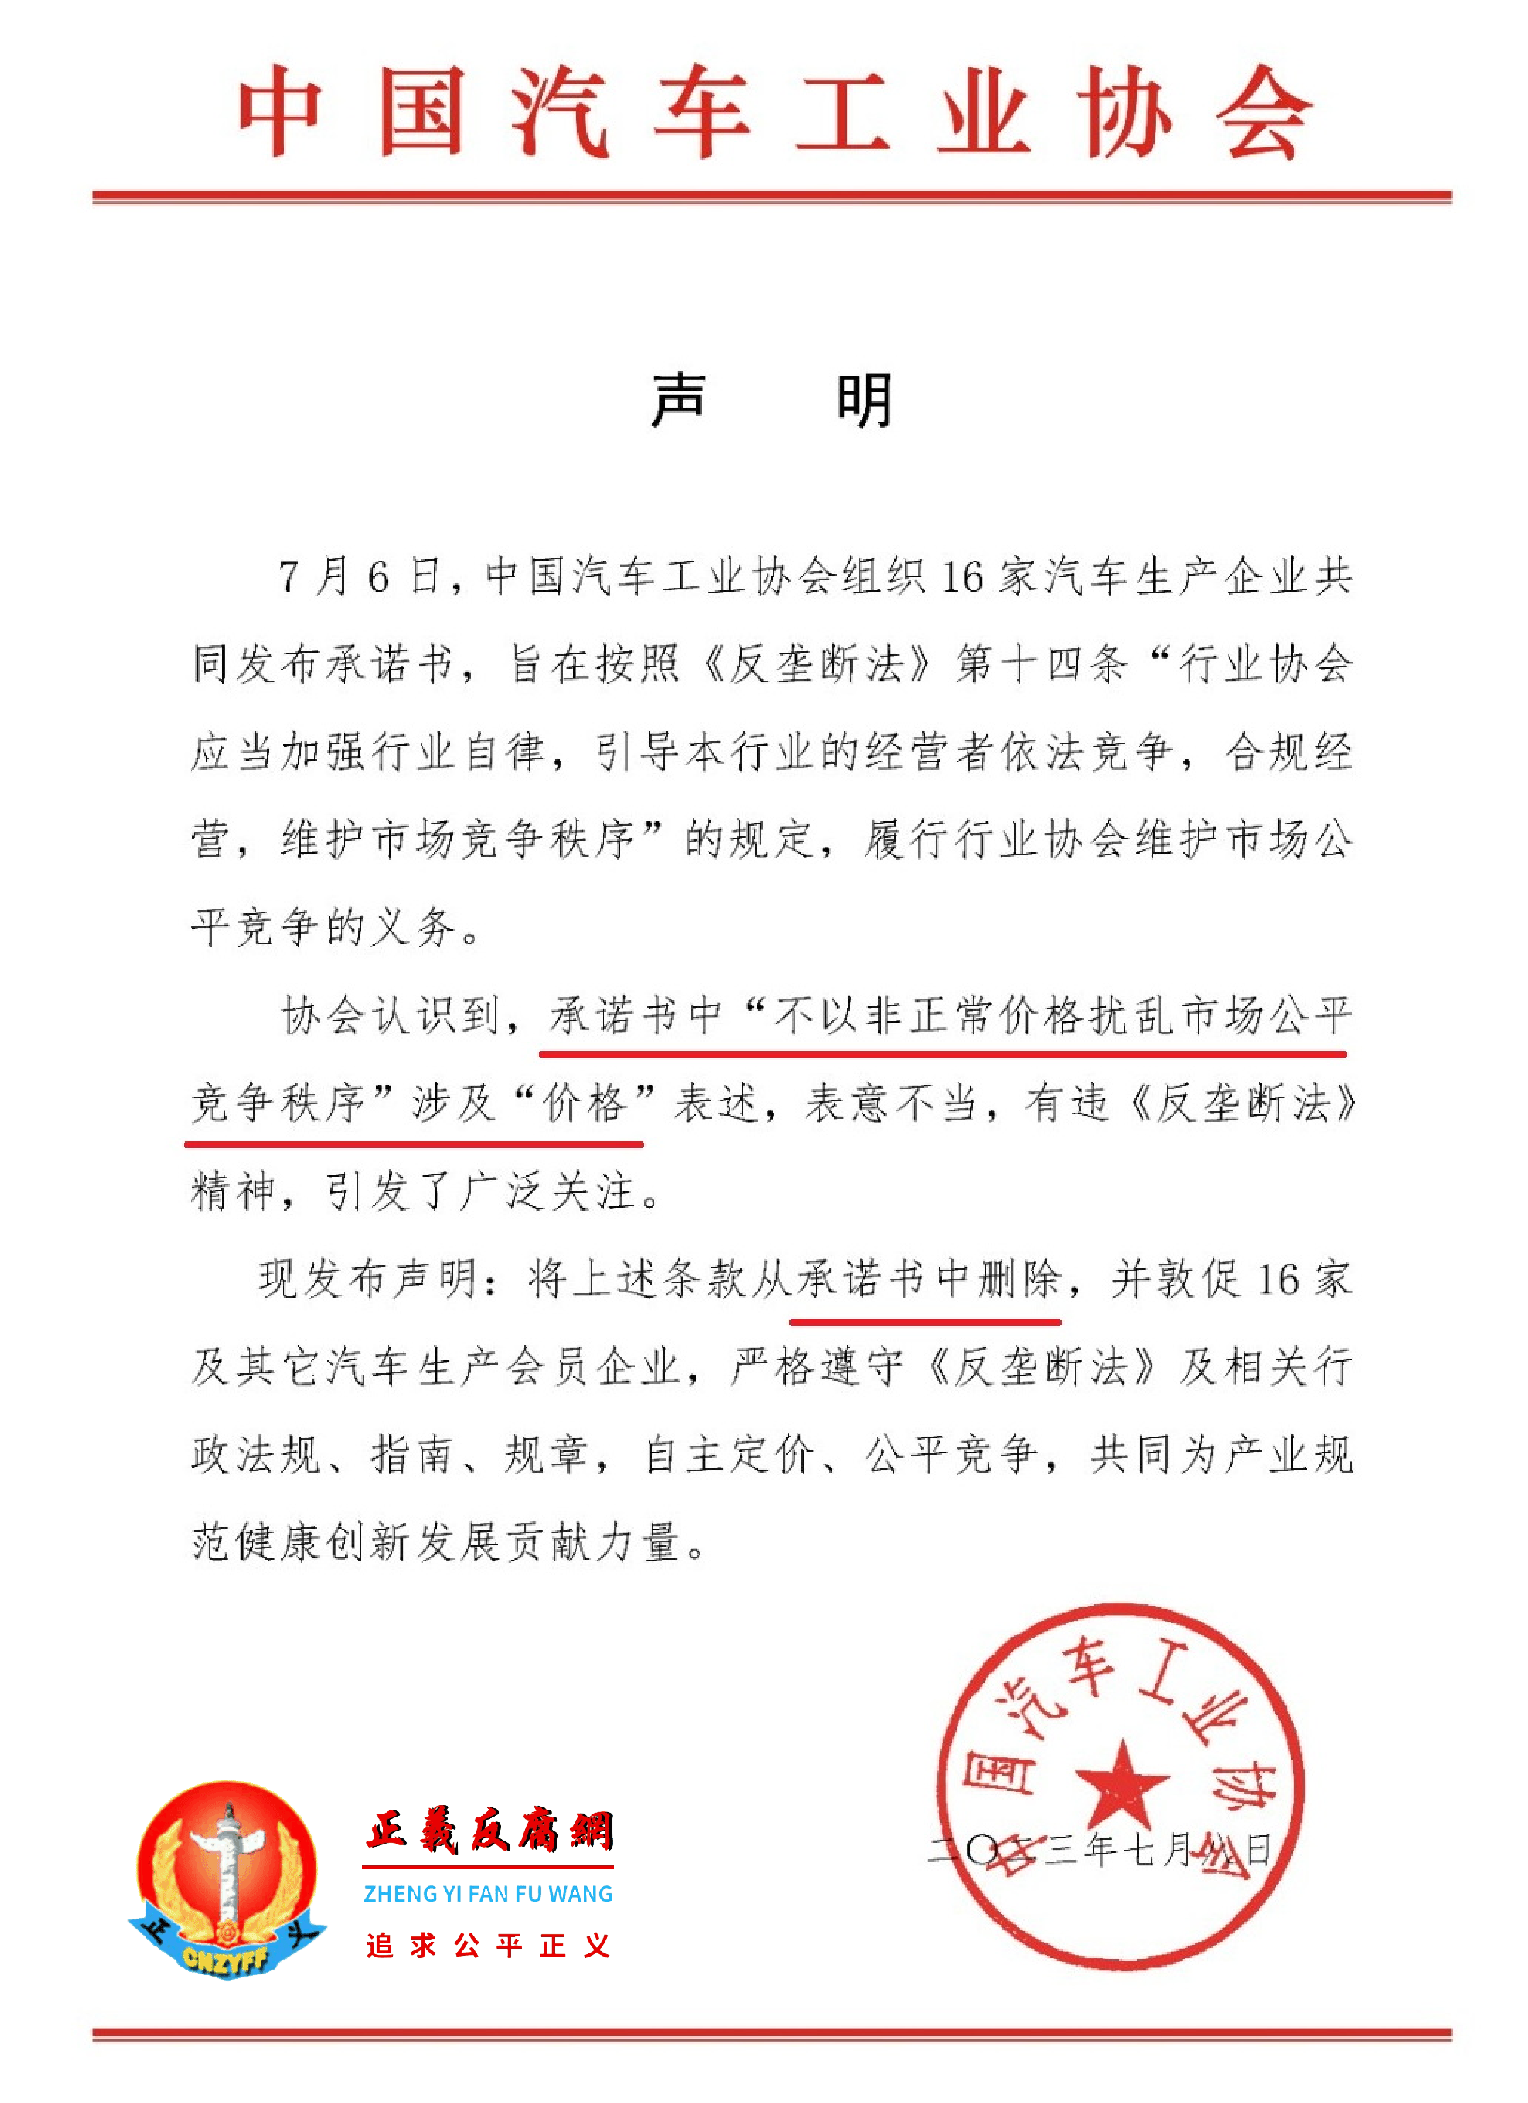 中国汽车工业协会发布《声明》.png